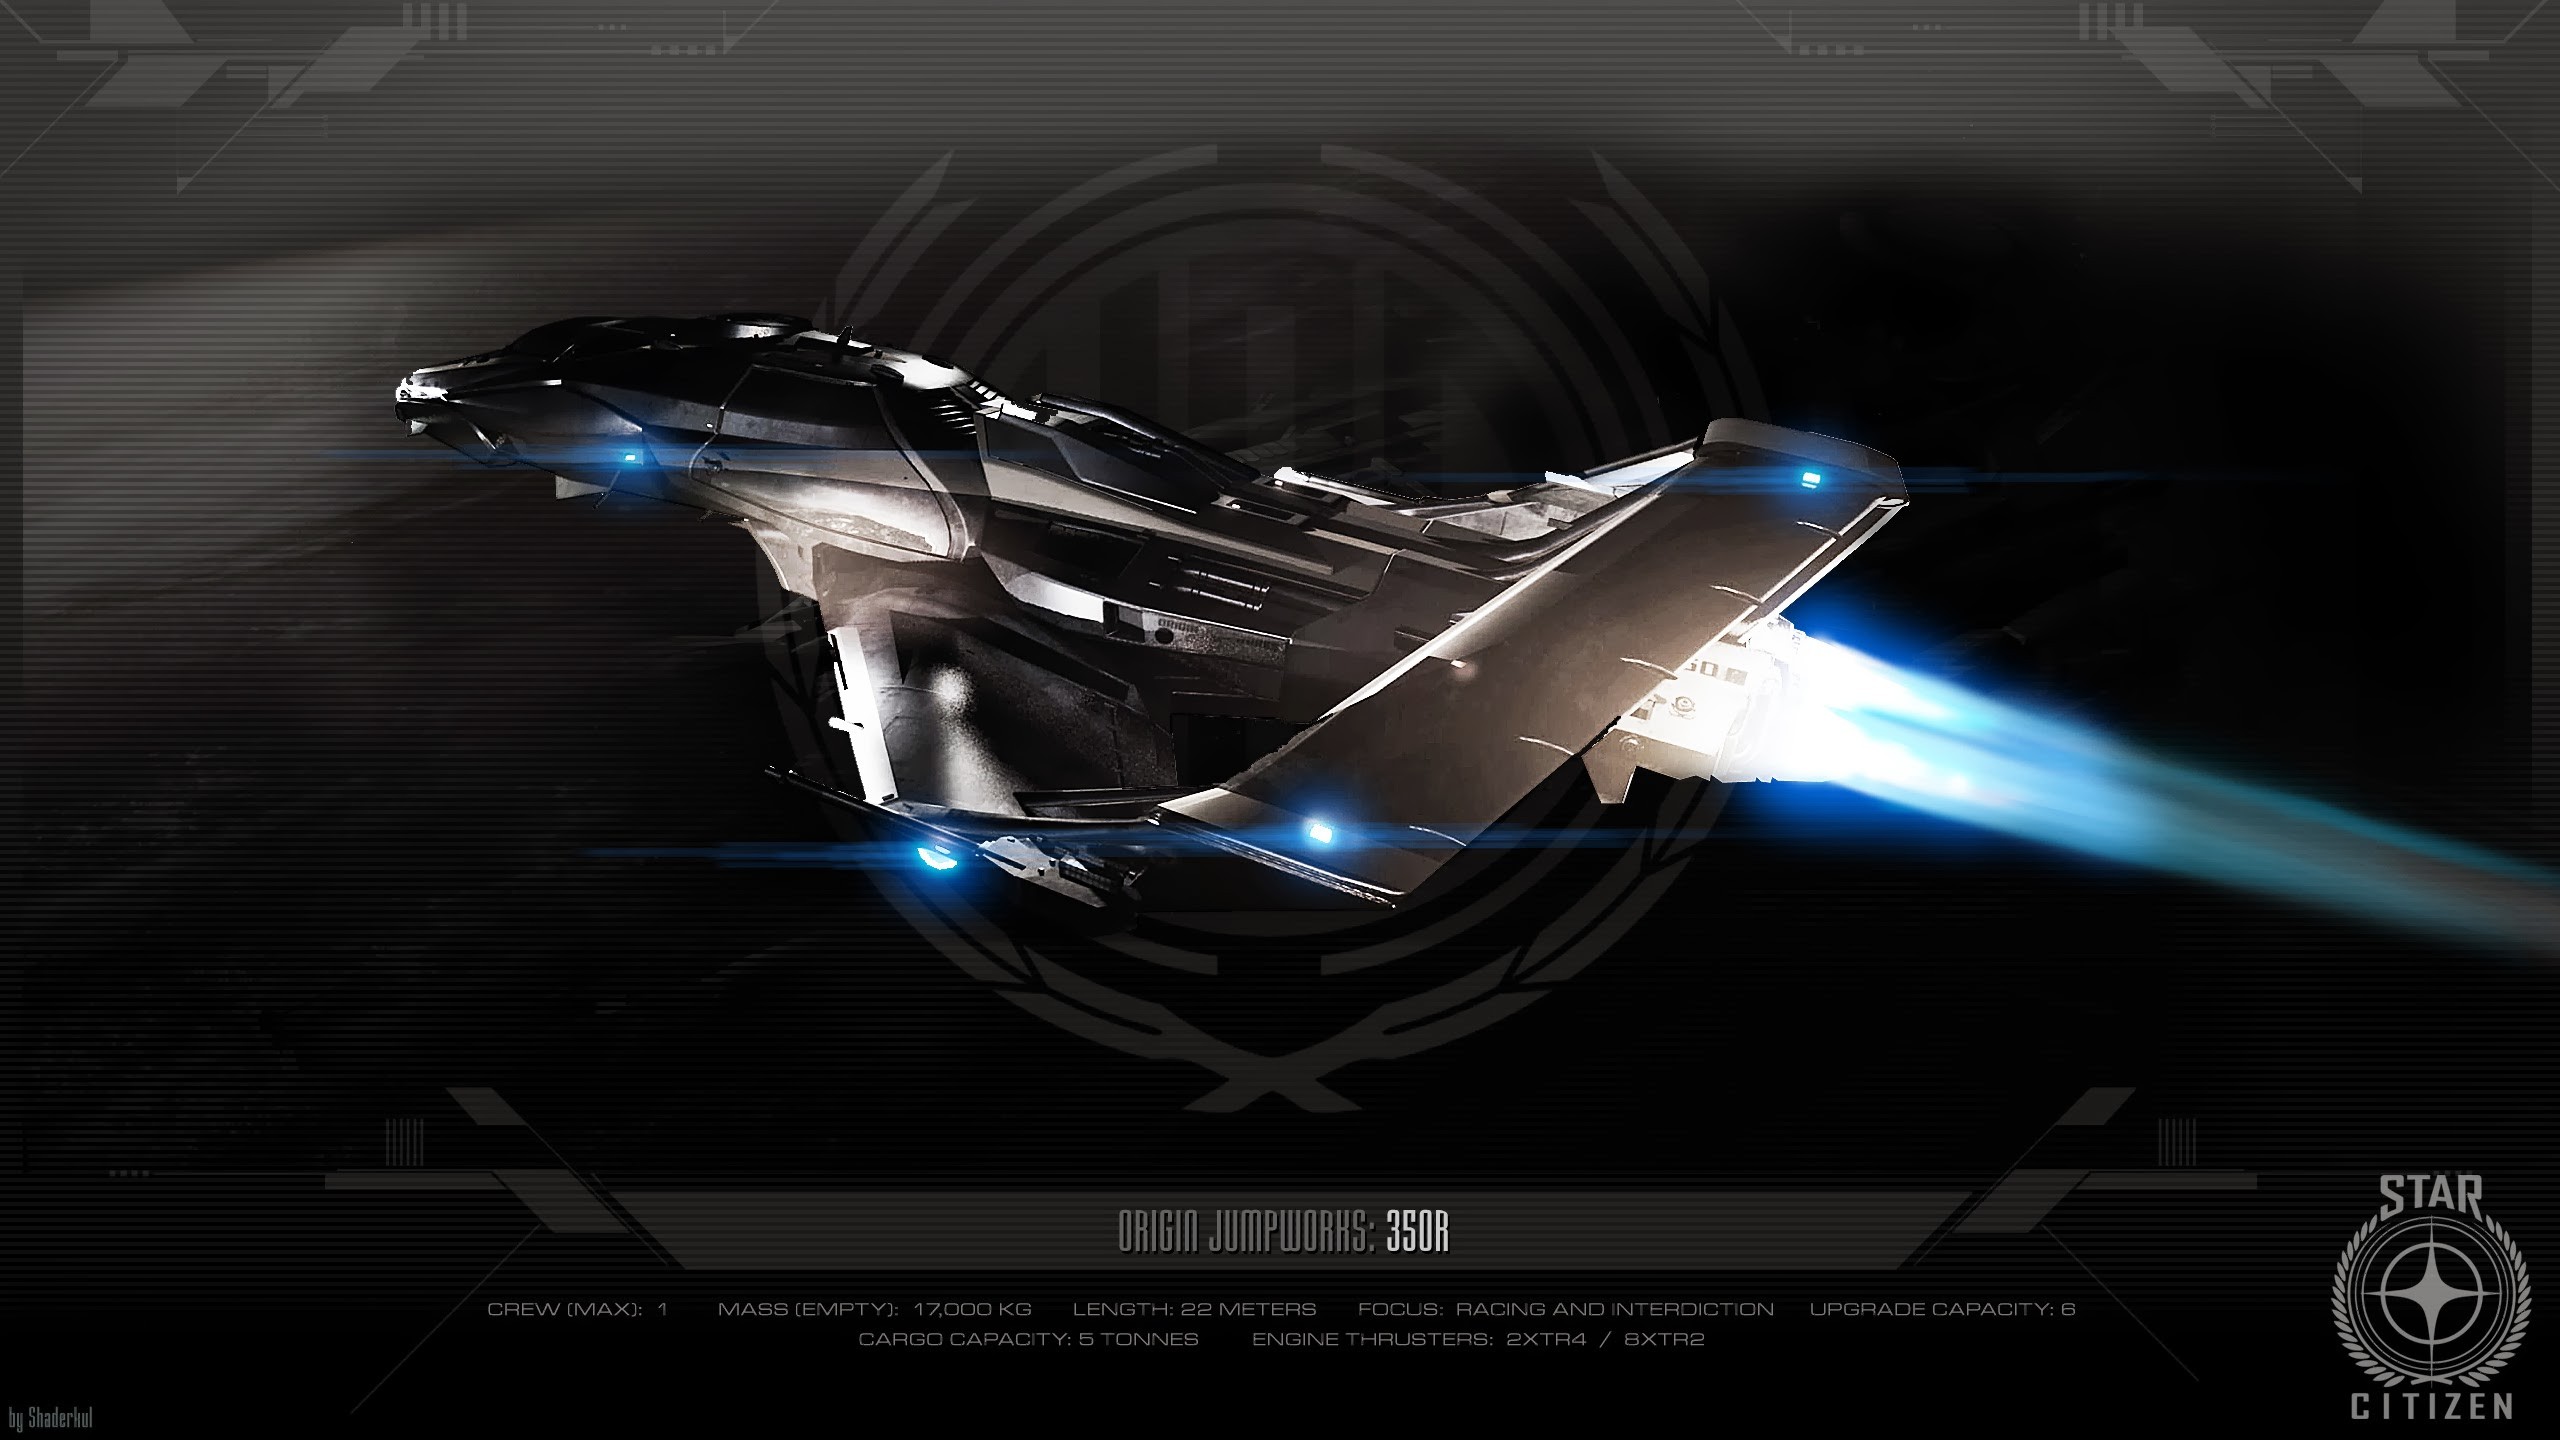 Star Citizen Spaceship 350r Star Citizen Origin Jumpworks Black 2560x1440